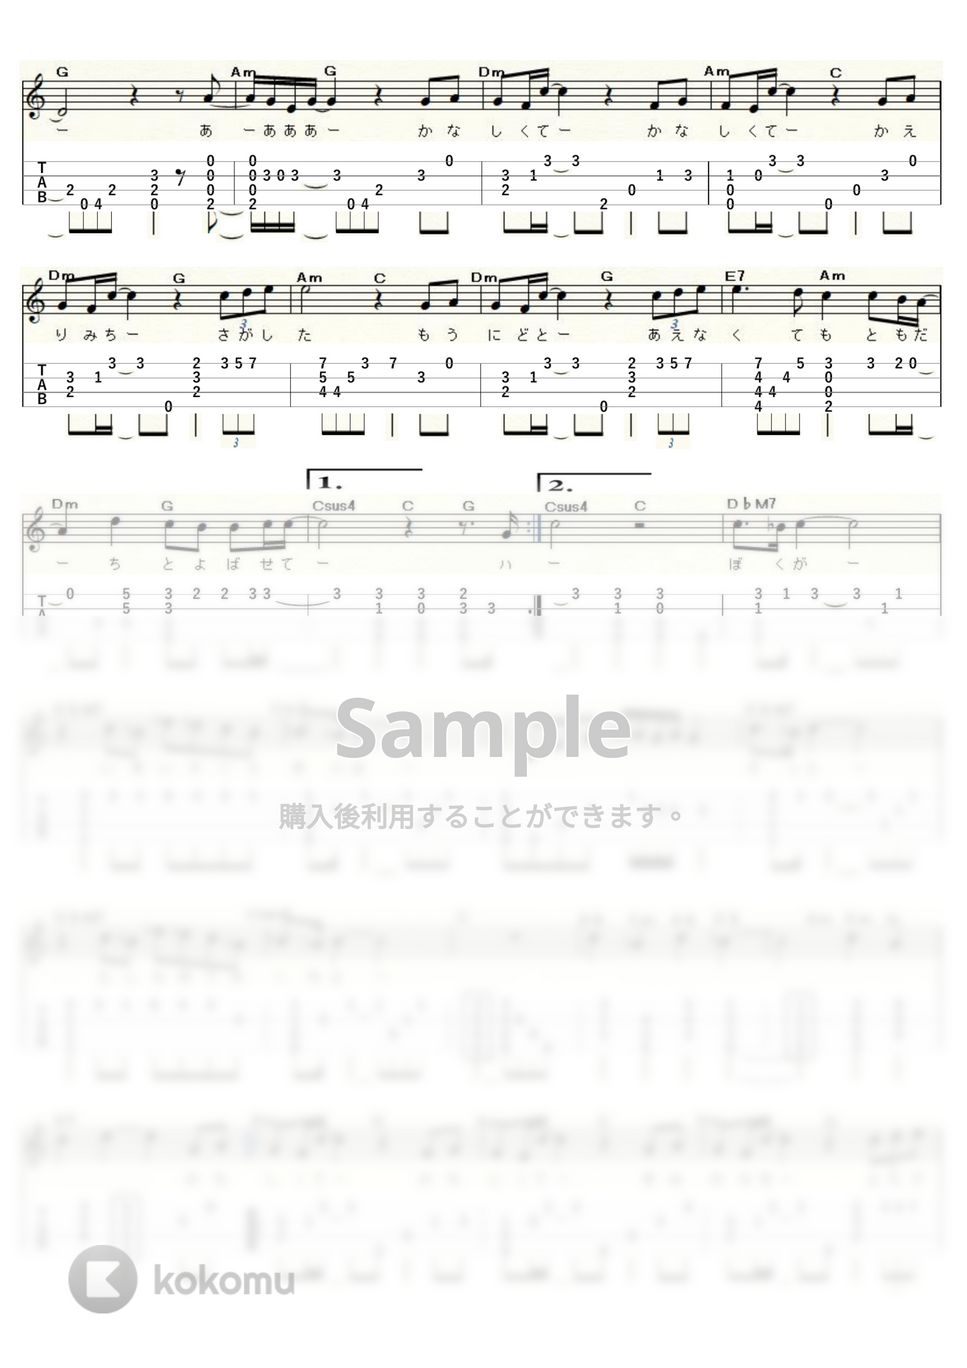 松任谷 由実 - Hello, my friend (ｳｸﾚﾚｿﾛ / Low-G / 中級) by ukulelepapa